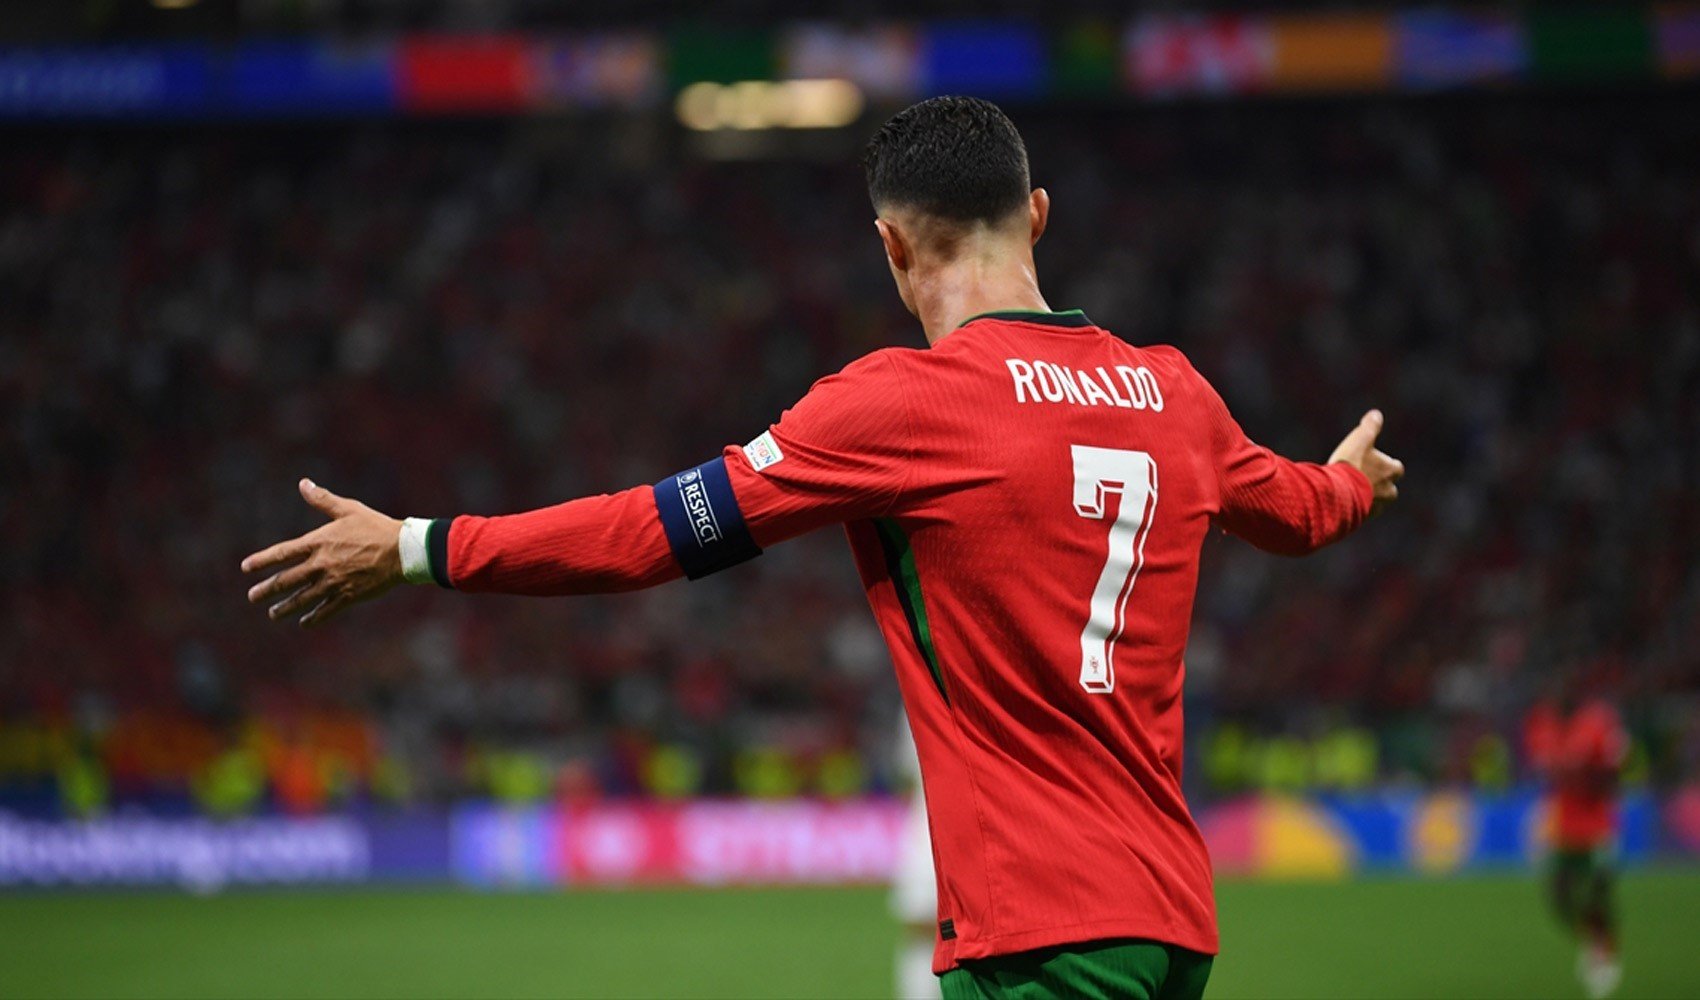 Portekiz, Fransa'nın rakibi oldu. Ronaldo penaltı kaçırdı